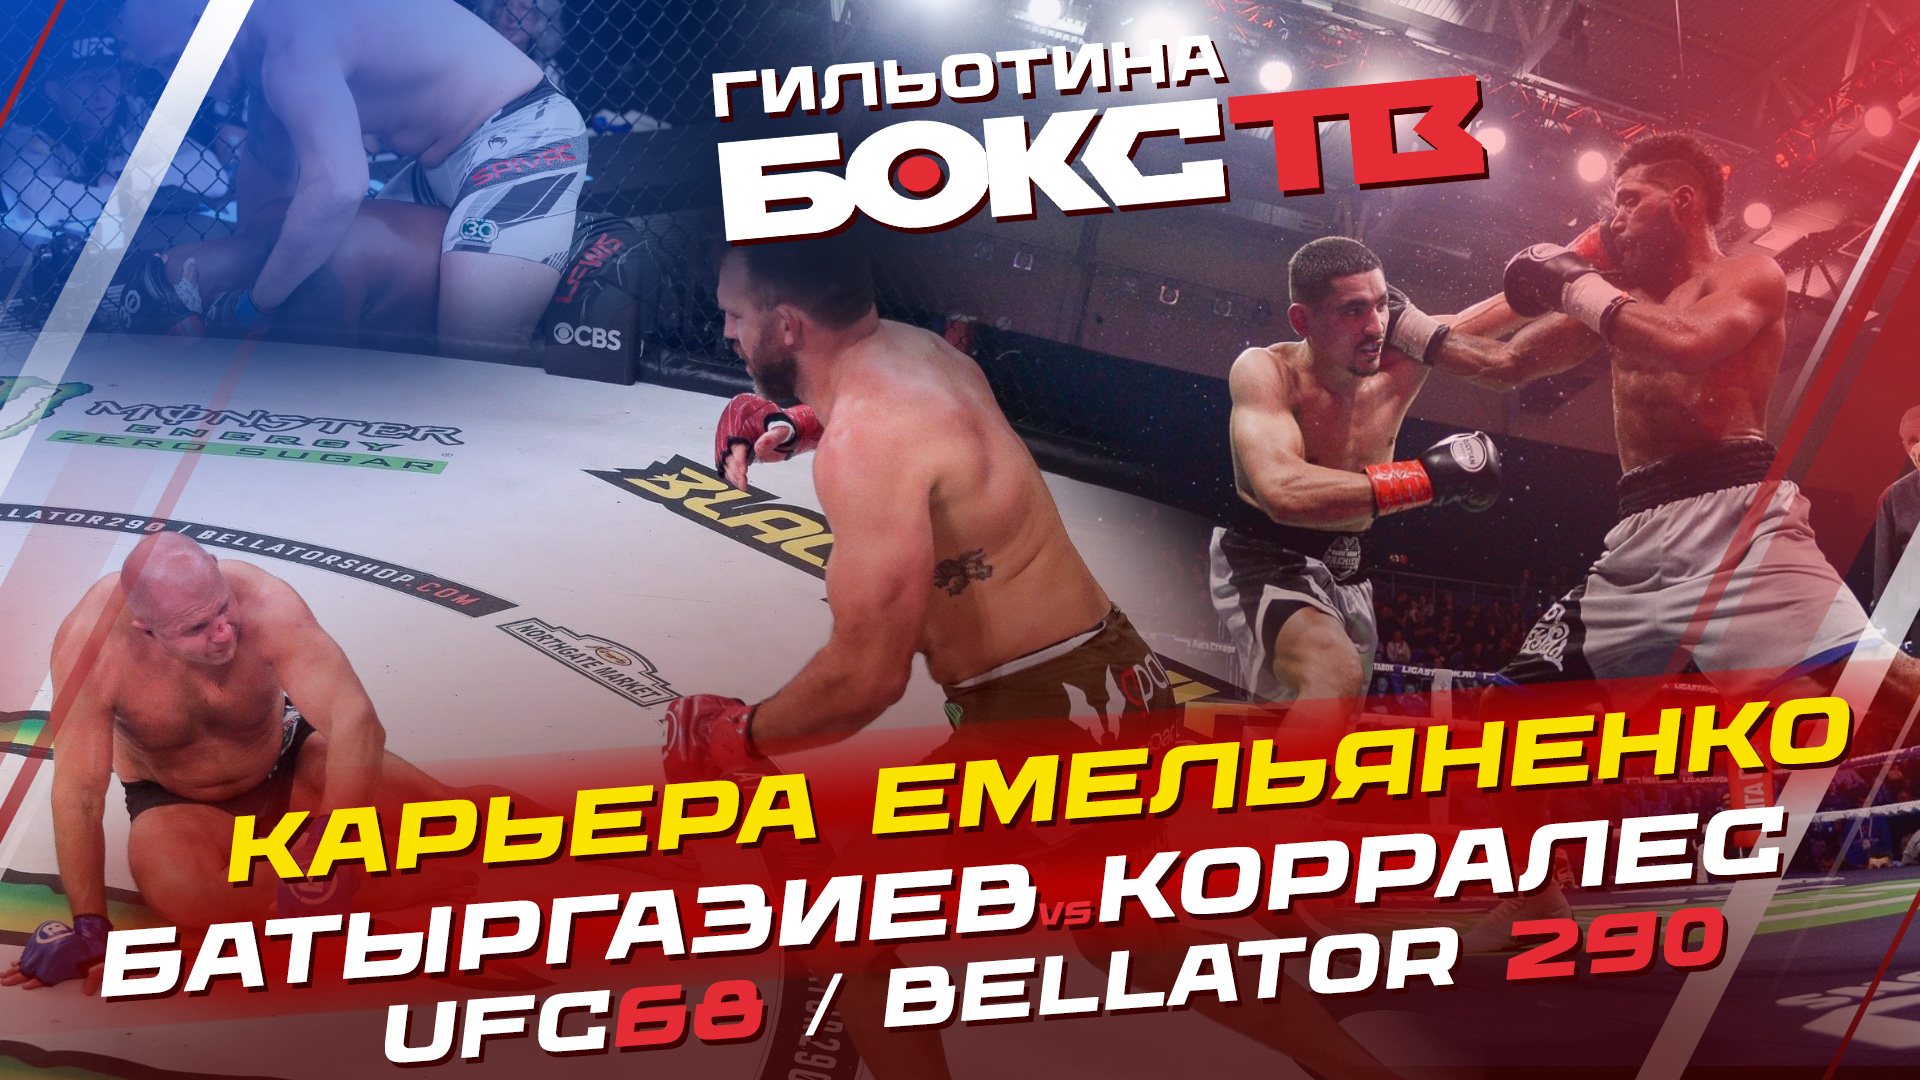 Емельяненко завершил карьеру / Батыргазиев & Корралес / UFC Вегас 68 / Bellator 290